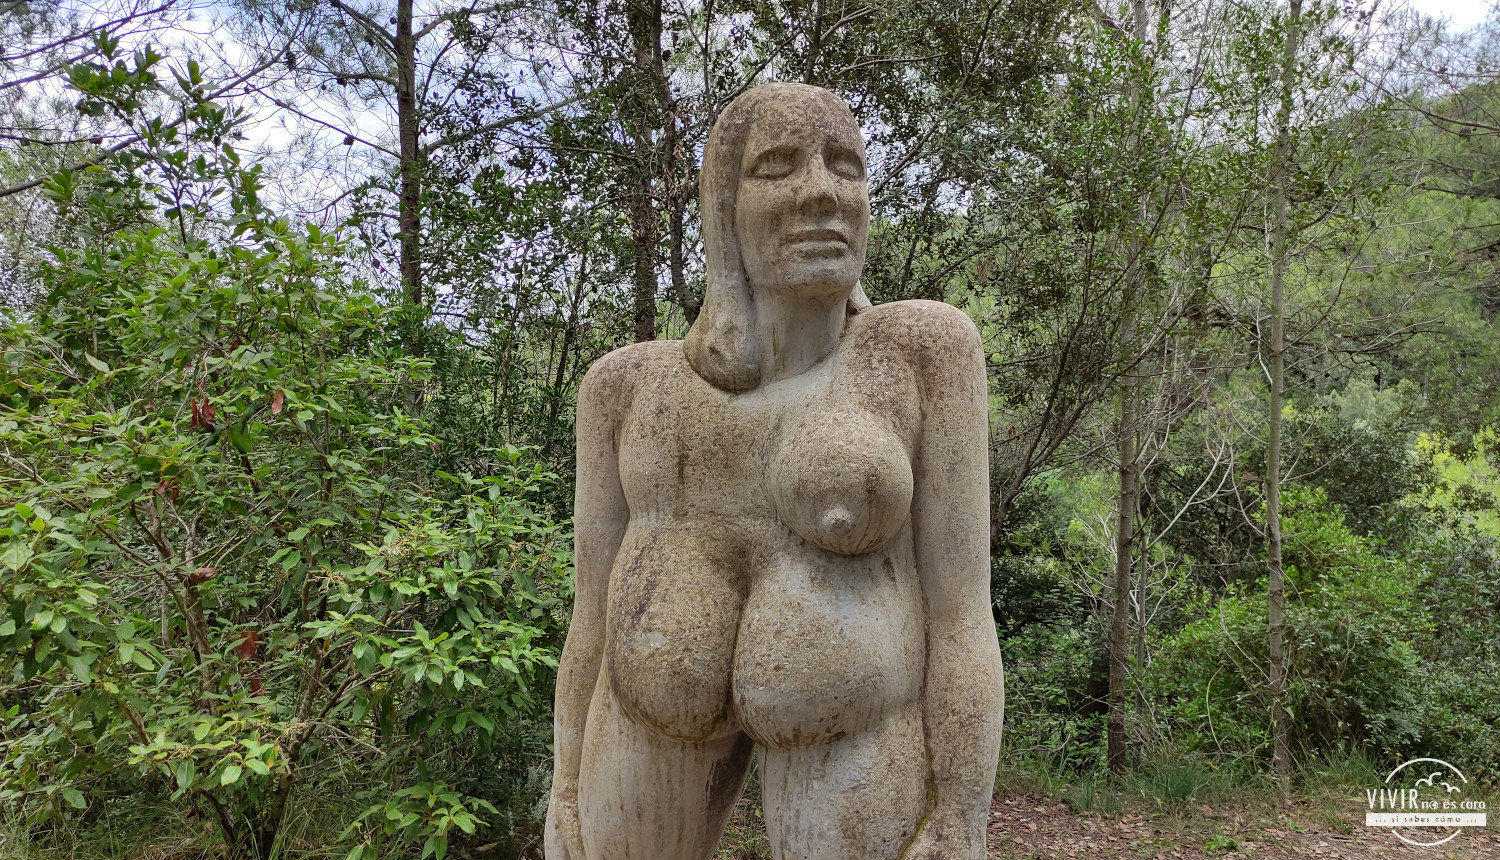 Escultura desnudo en bosque Can de Ginebreda (Porqueres, Gerona)